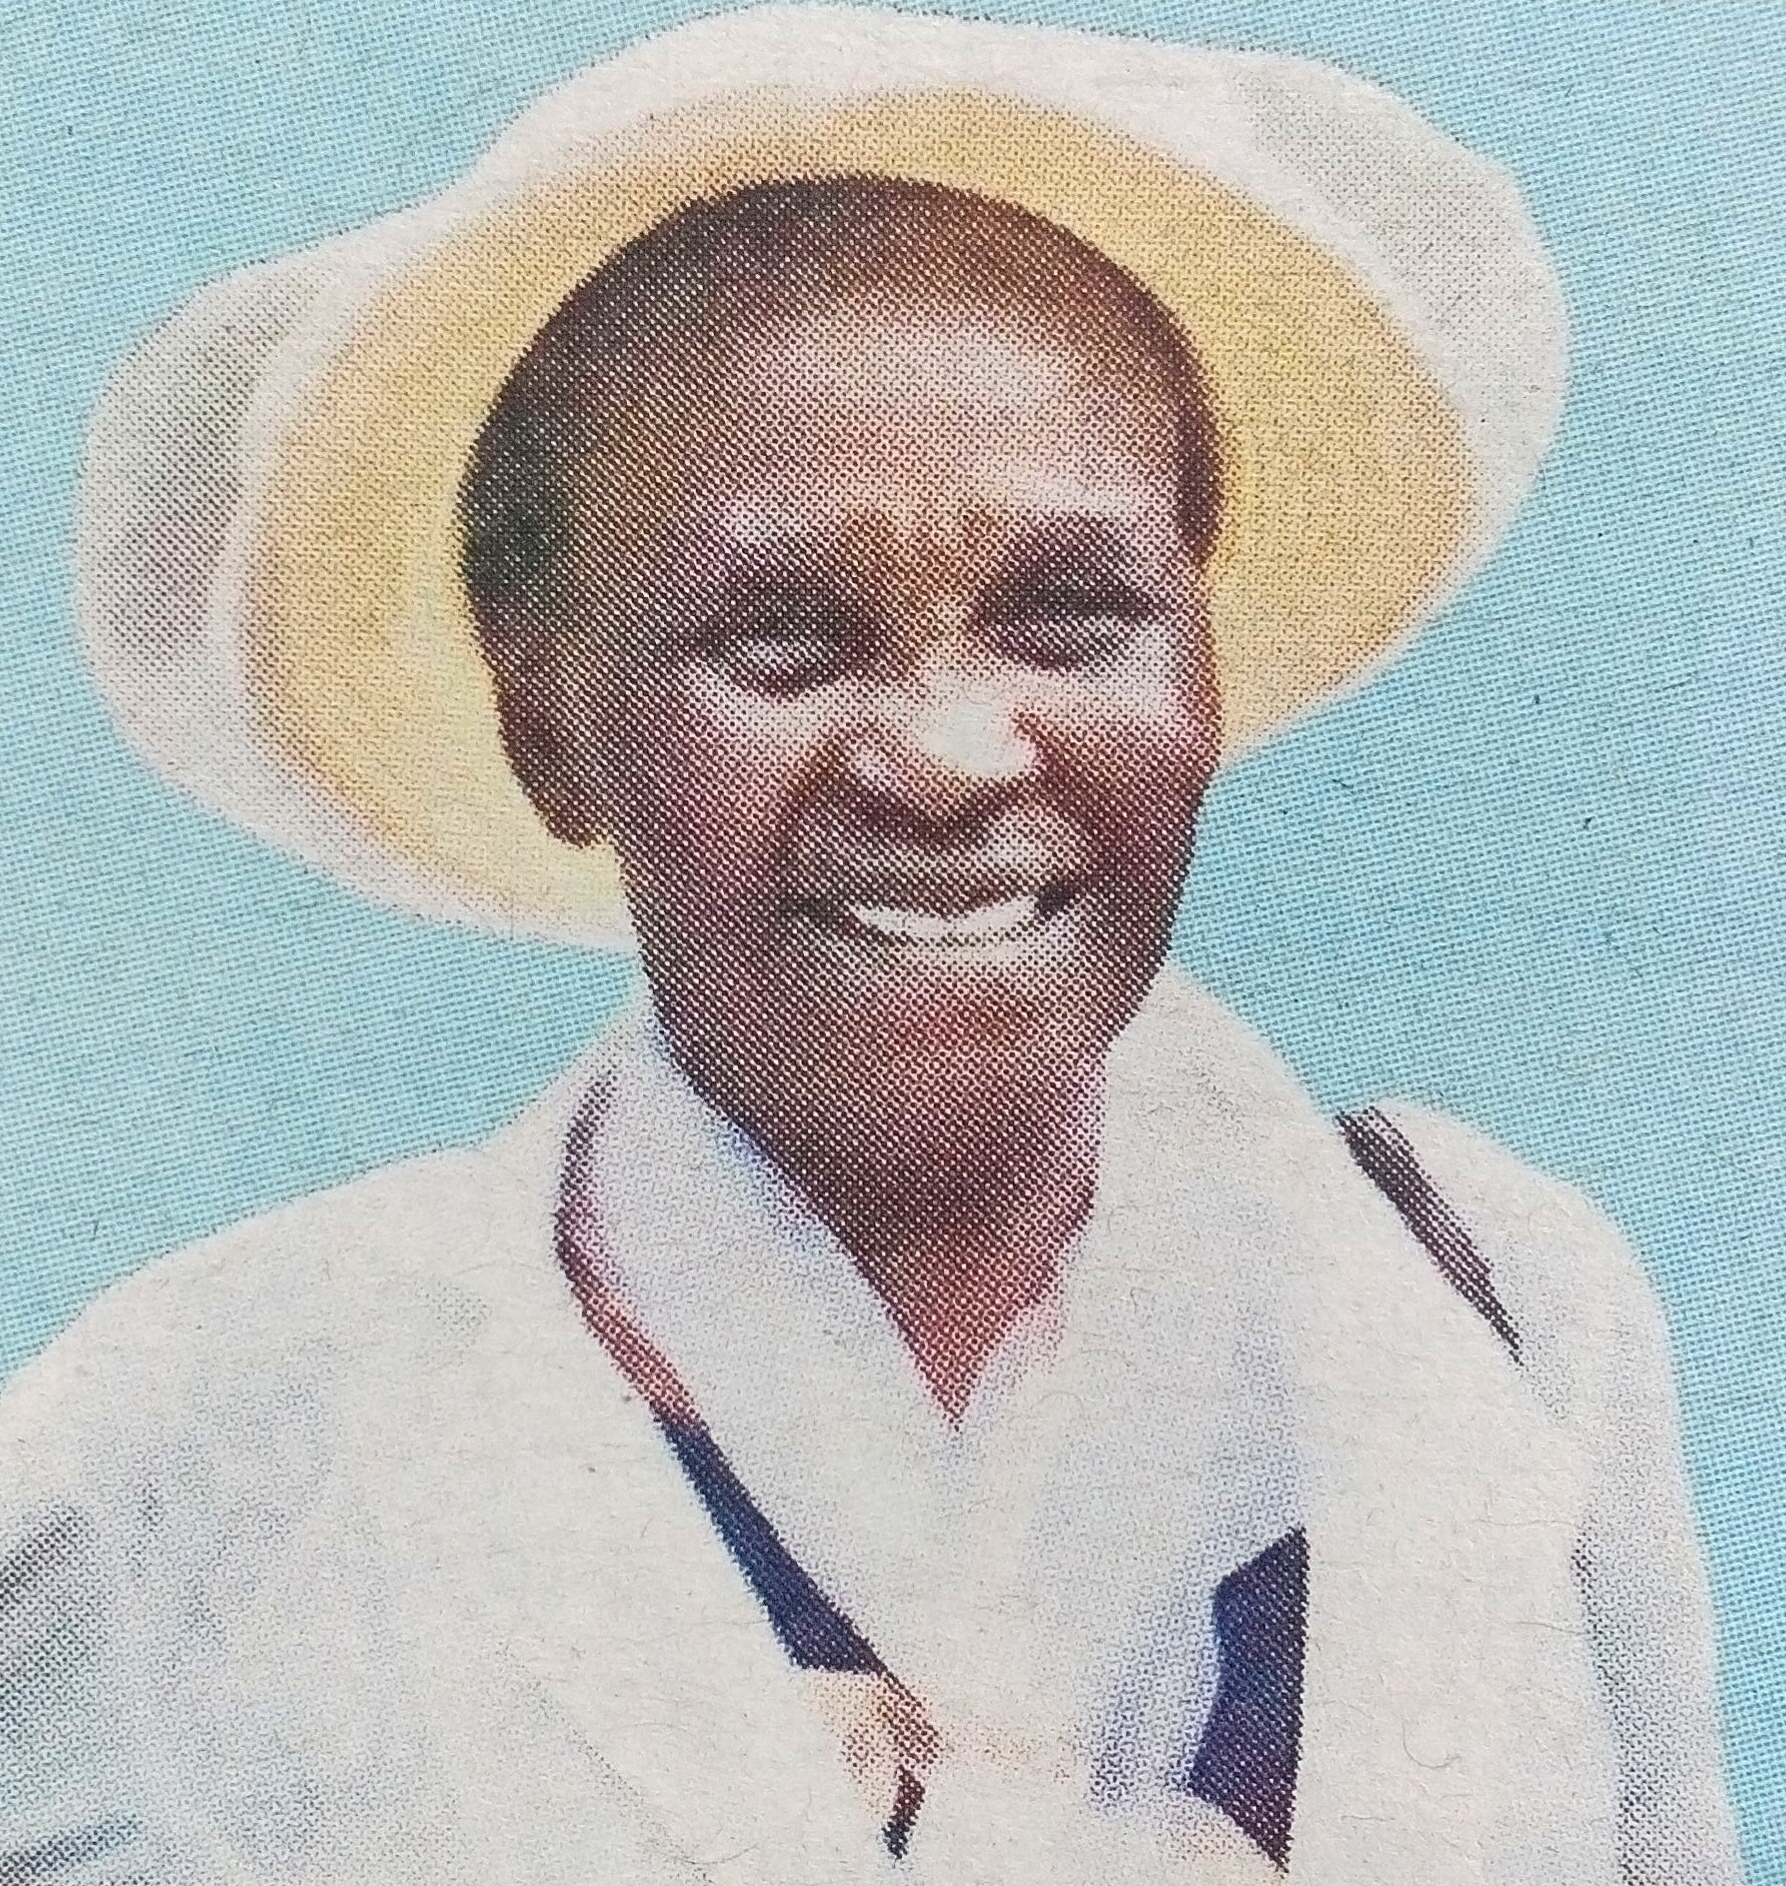 Obituary Image of Anna Wangui Kanyiri